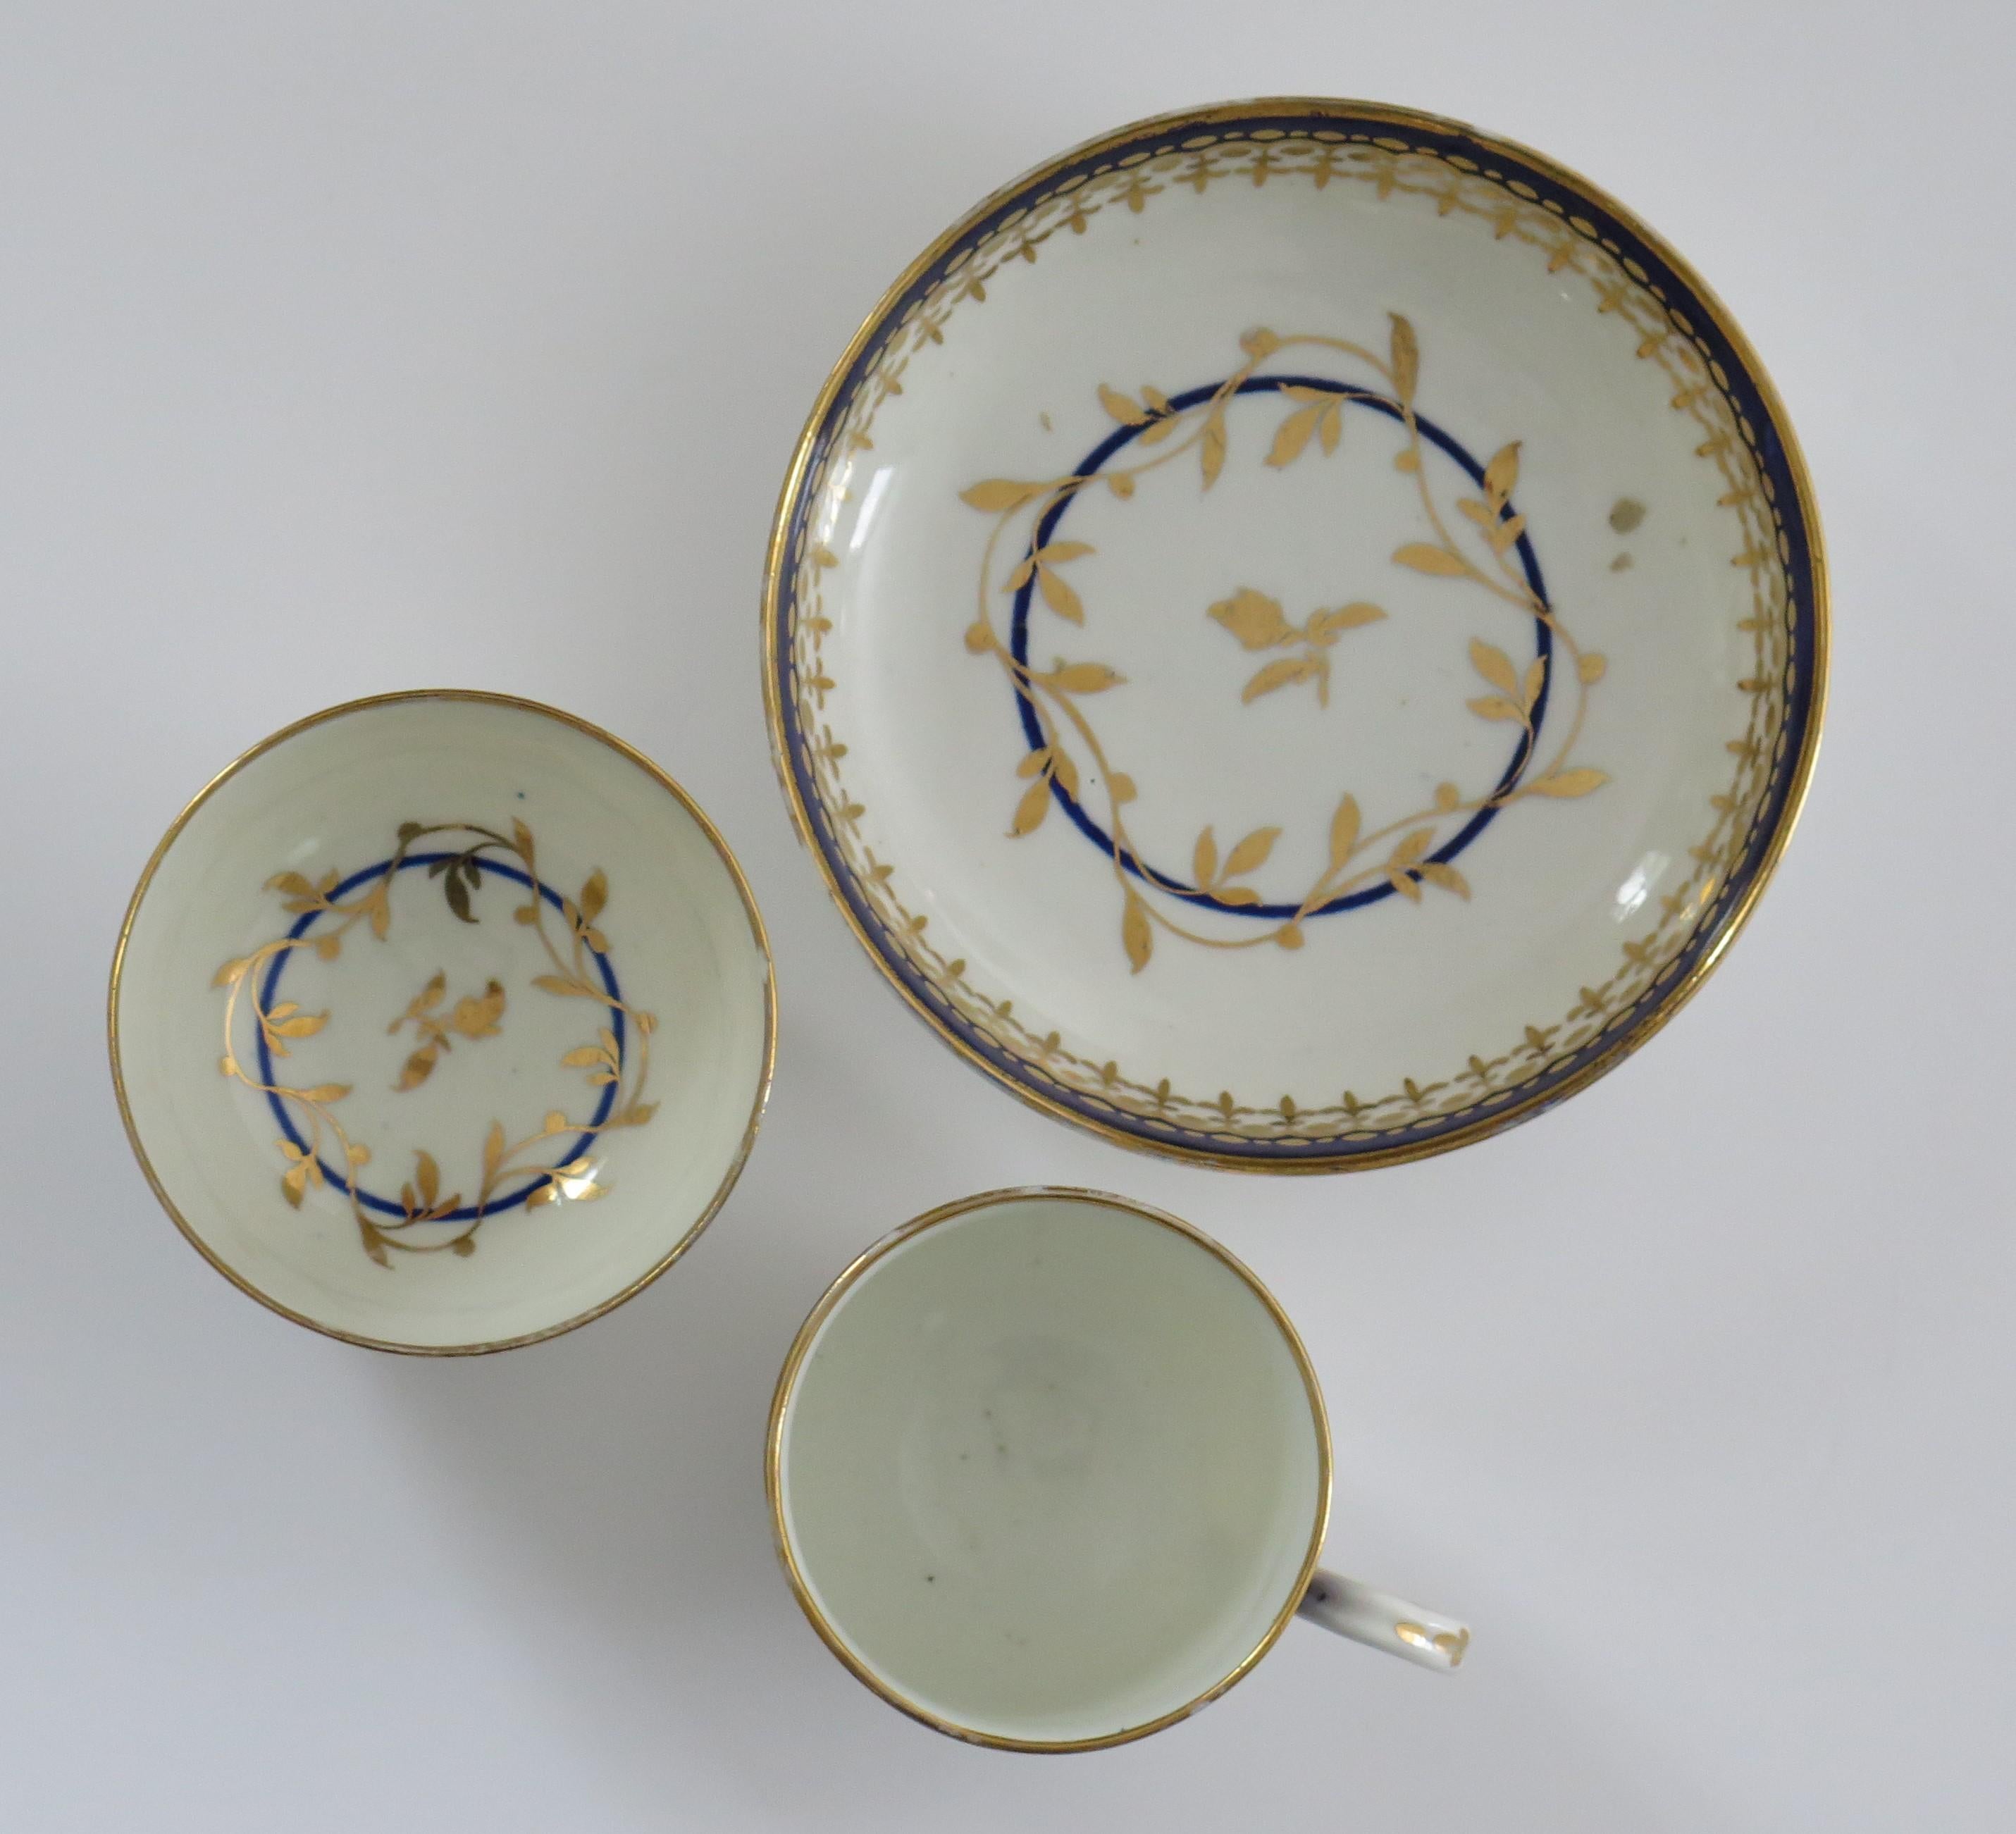 Il s'agit d'un bon Trio de tasses à café, bols à thé et soucoupes en porcelaine de Worcester de la fin du 18e siècle dans un motif combiné bleu et or, entièrement marqué et datant d'environ 1780.

Toutes les pièces sont décorées d'un motif